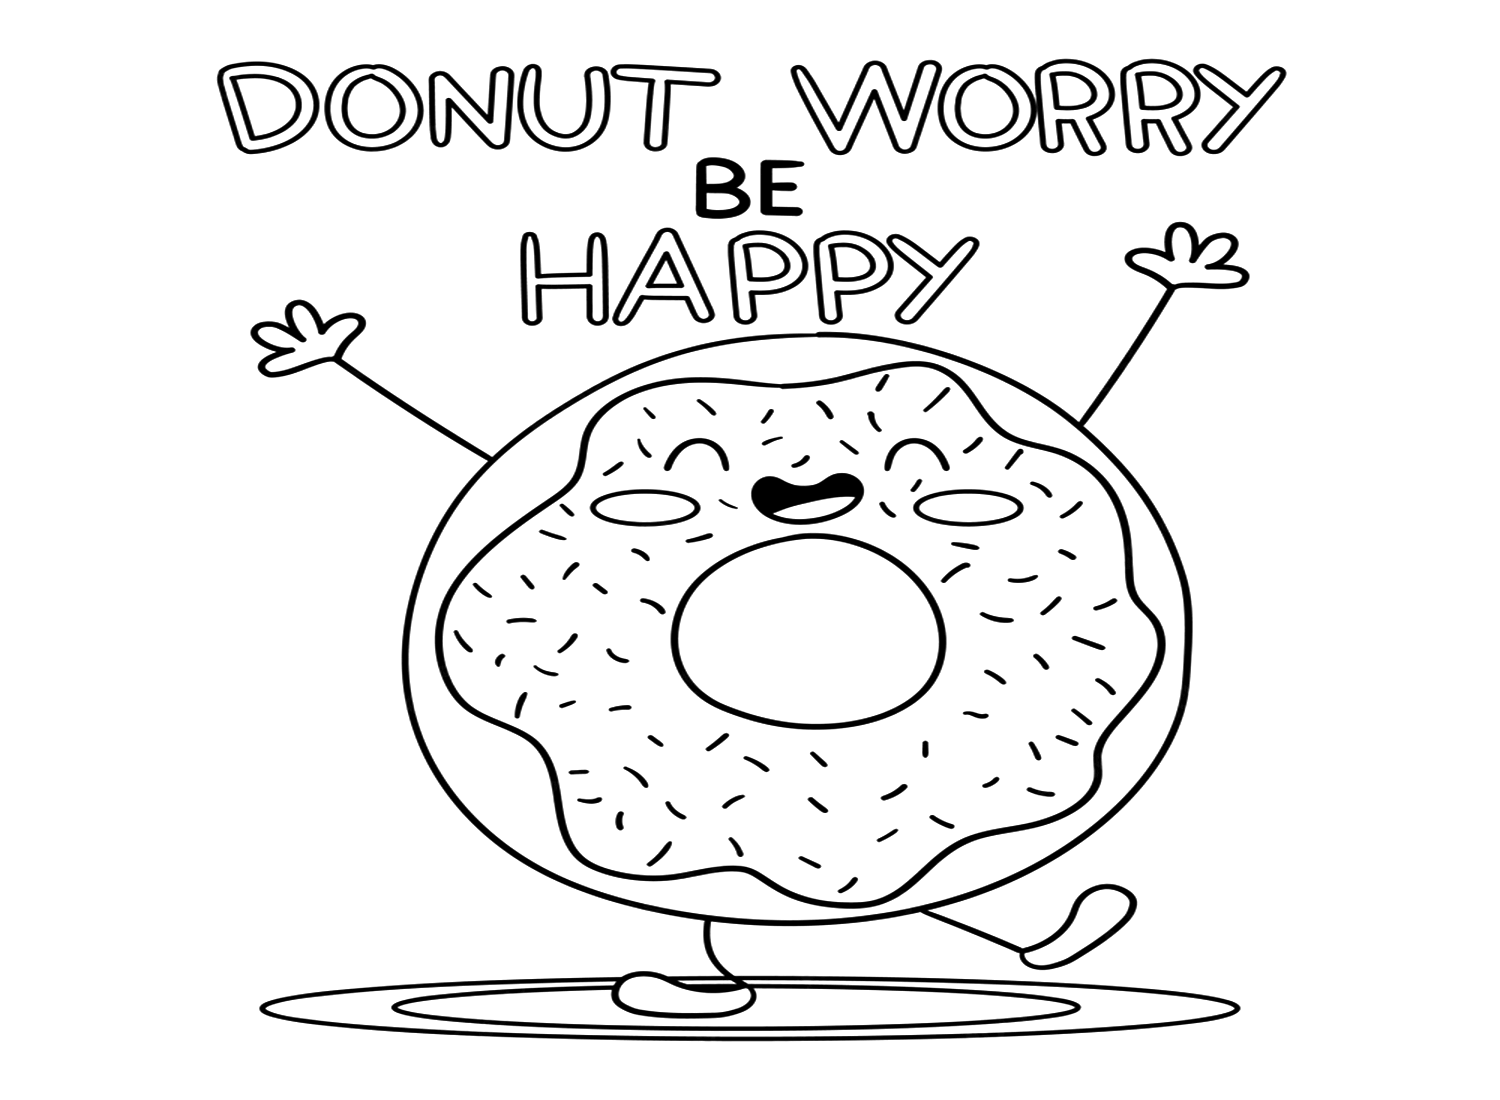 Página para colorear de Donut Worry Be Happy de Donut